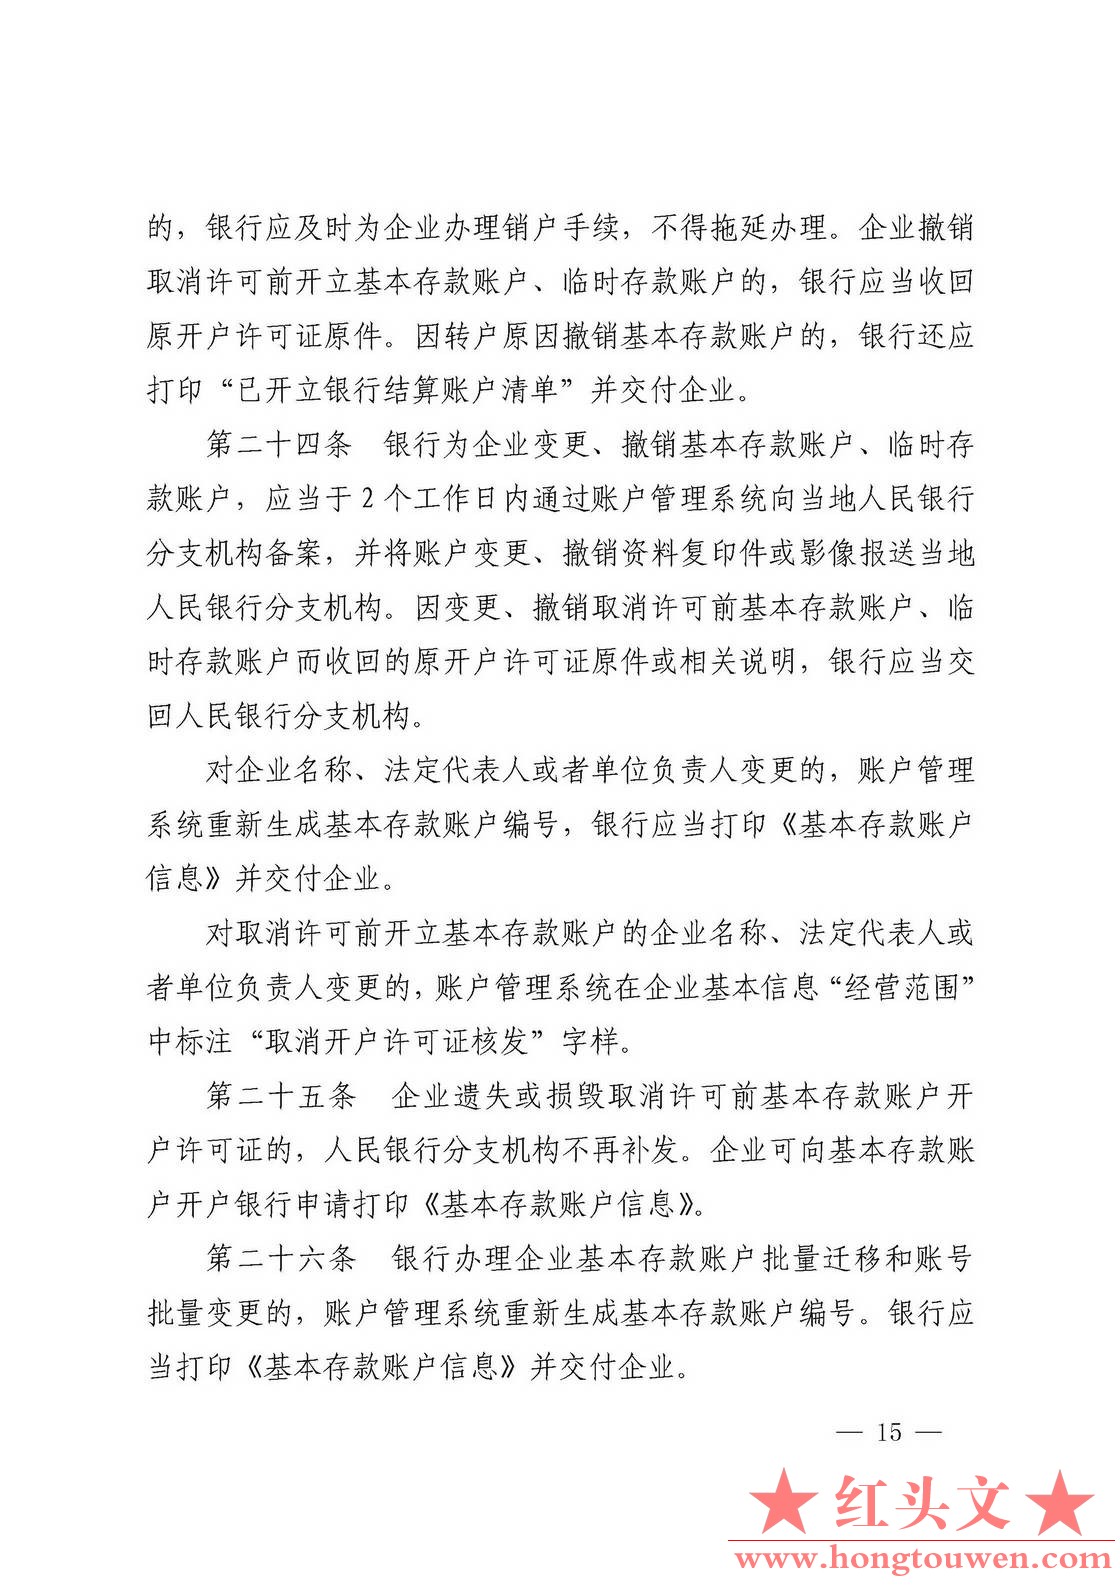 银发[2019]41号-中国人民银行关于取消企业银行账户许可的通知_页面_15.jpg.jpg